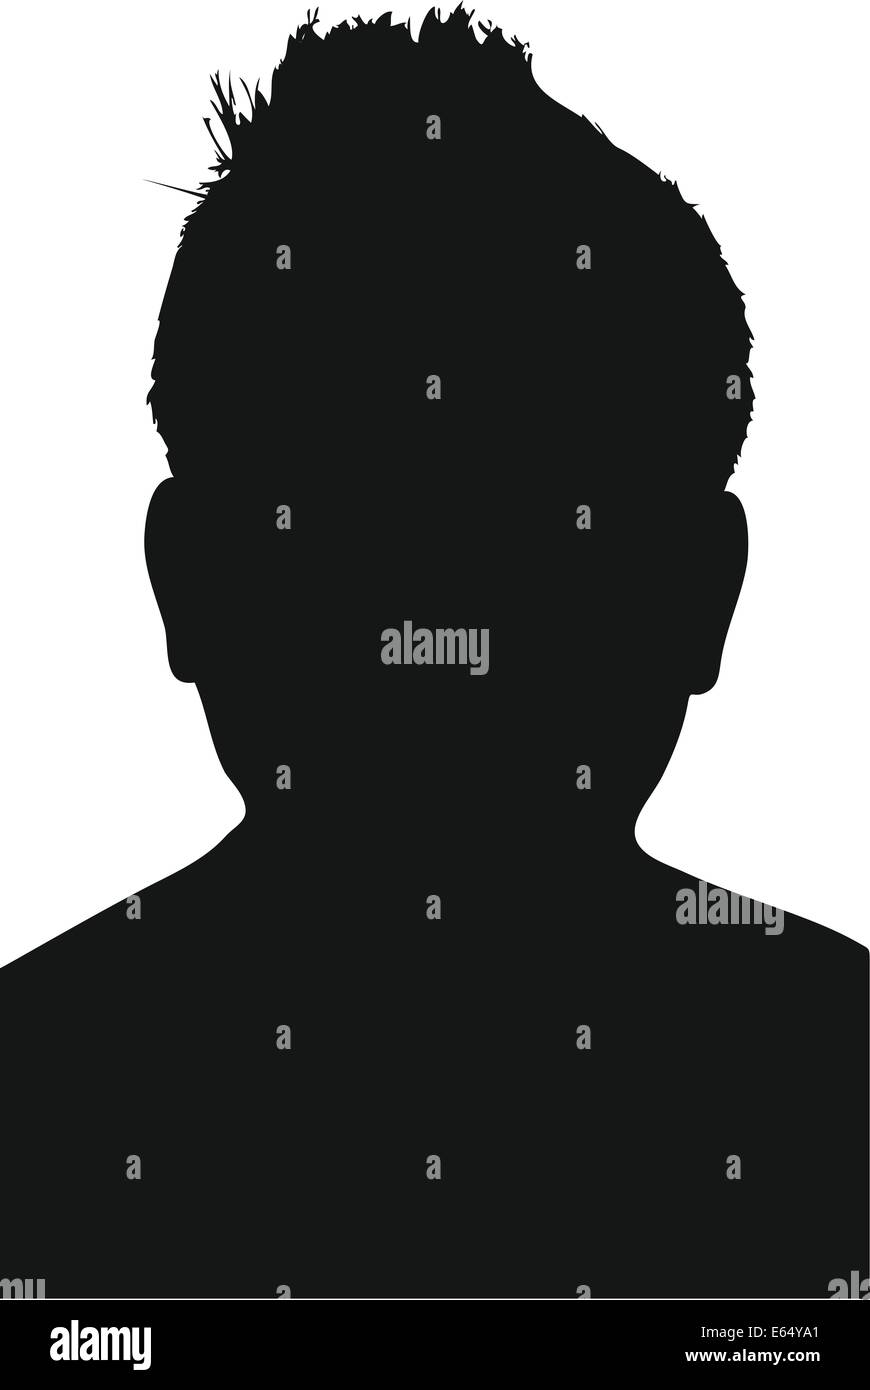 Silhouette Mann Scherenschnitt schwarz weiß Umriss Männer kurz Haare Abbild Symbol Symbolik User Userfoto Foto Vektor Vektorgraf Stock Photo